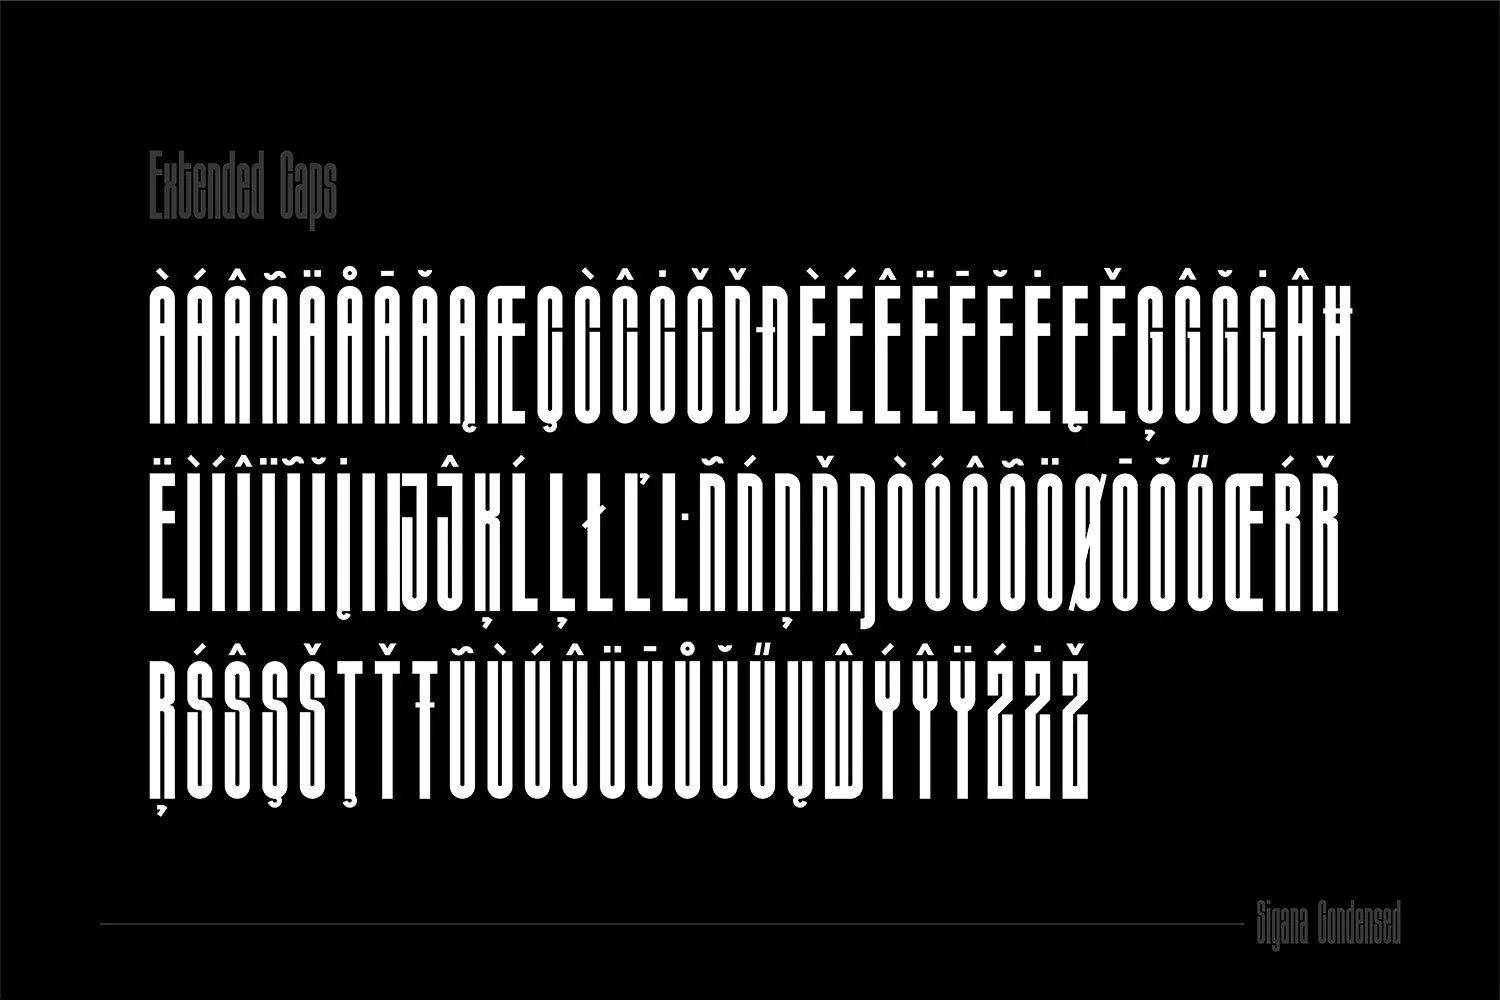 2382 现代概念显示英文超浓缩无衬线标题字体 Sigana – Modern Display Font